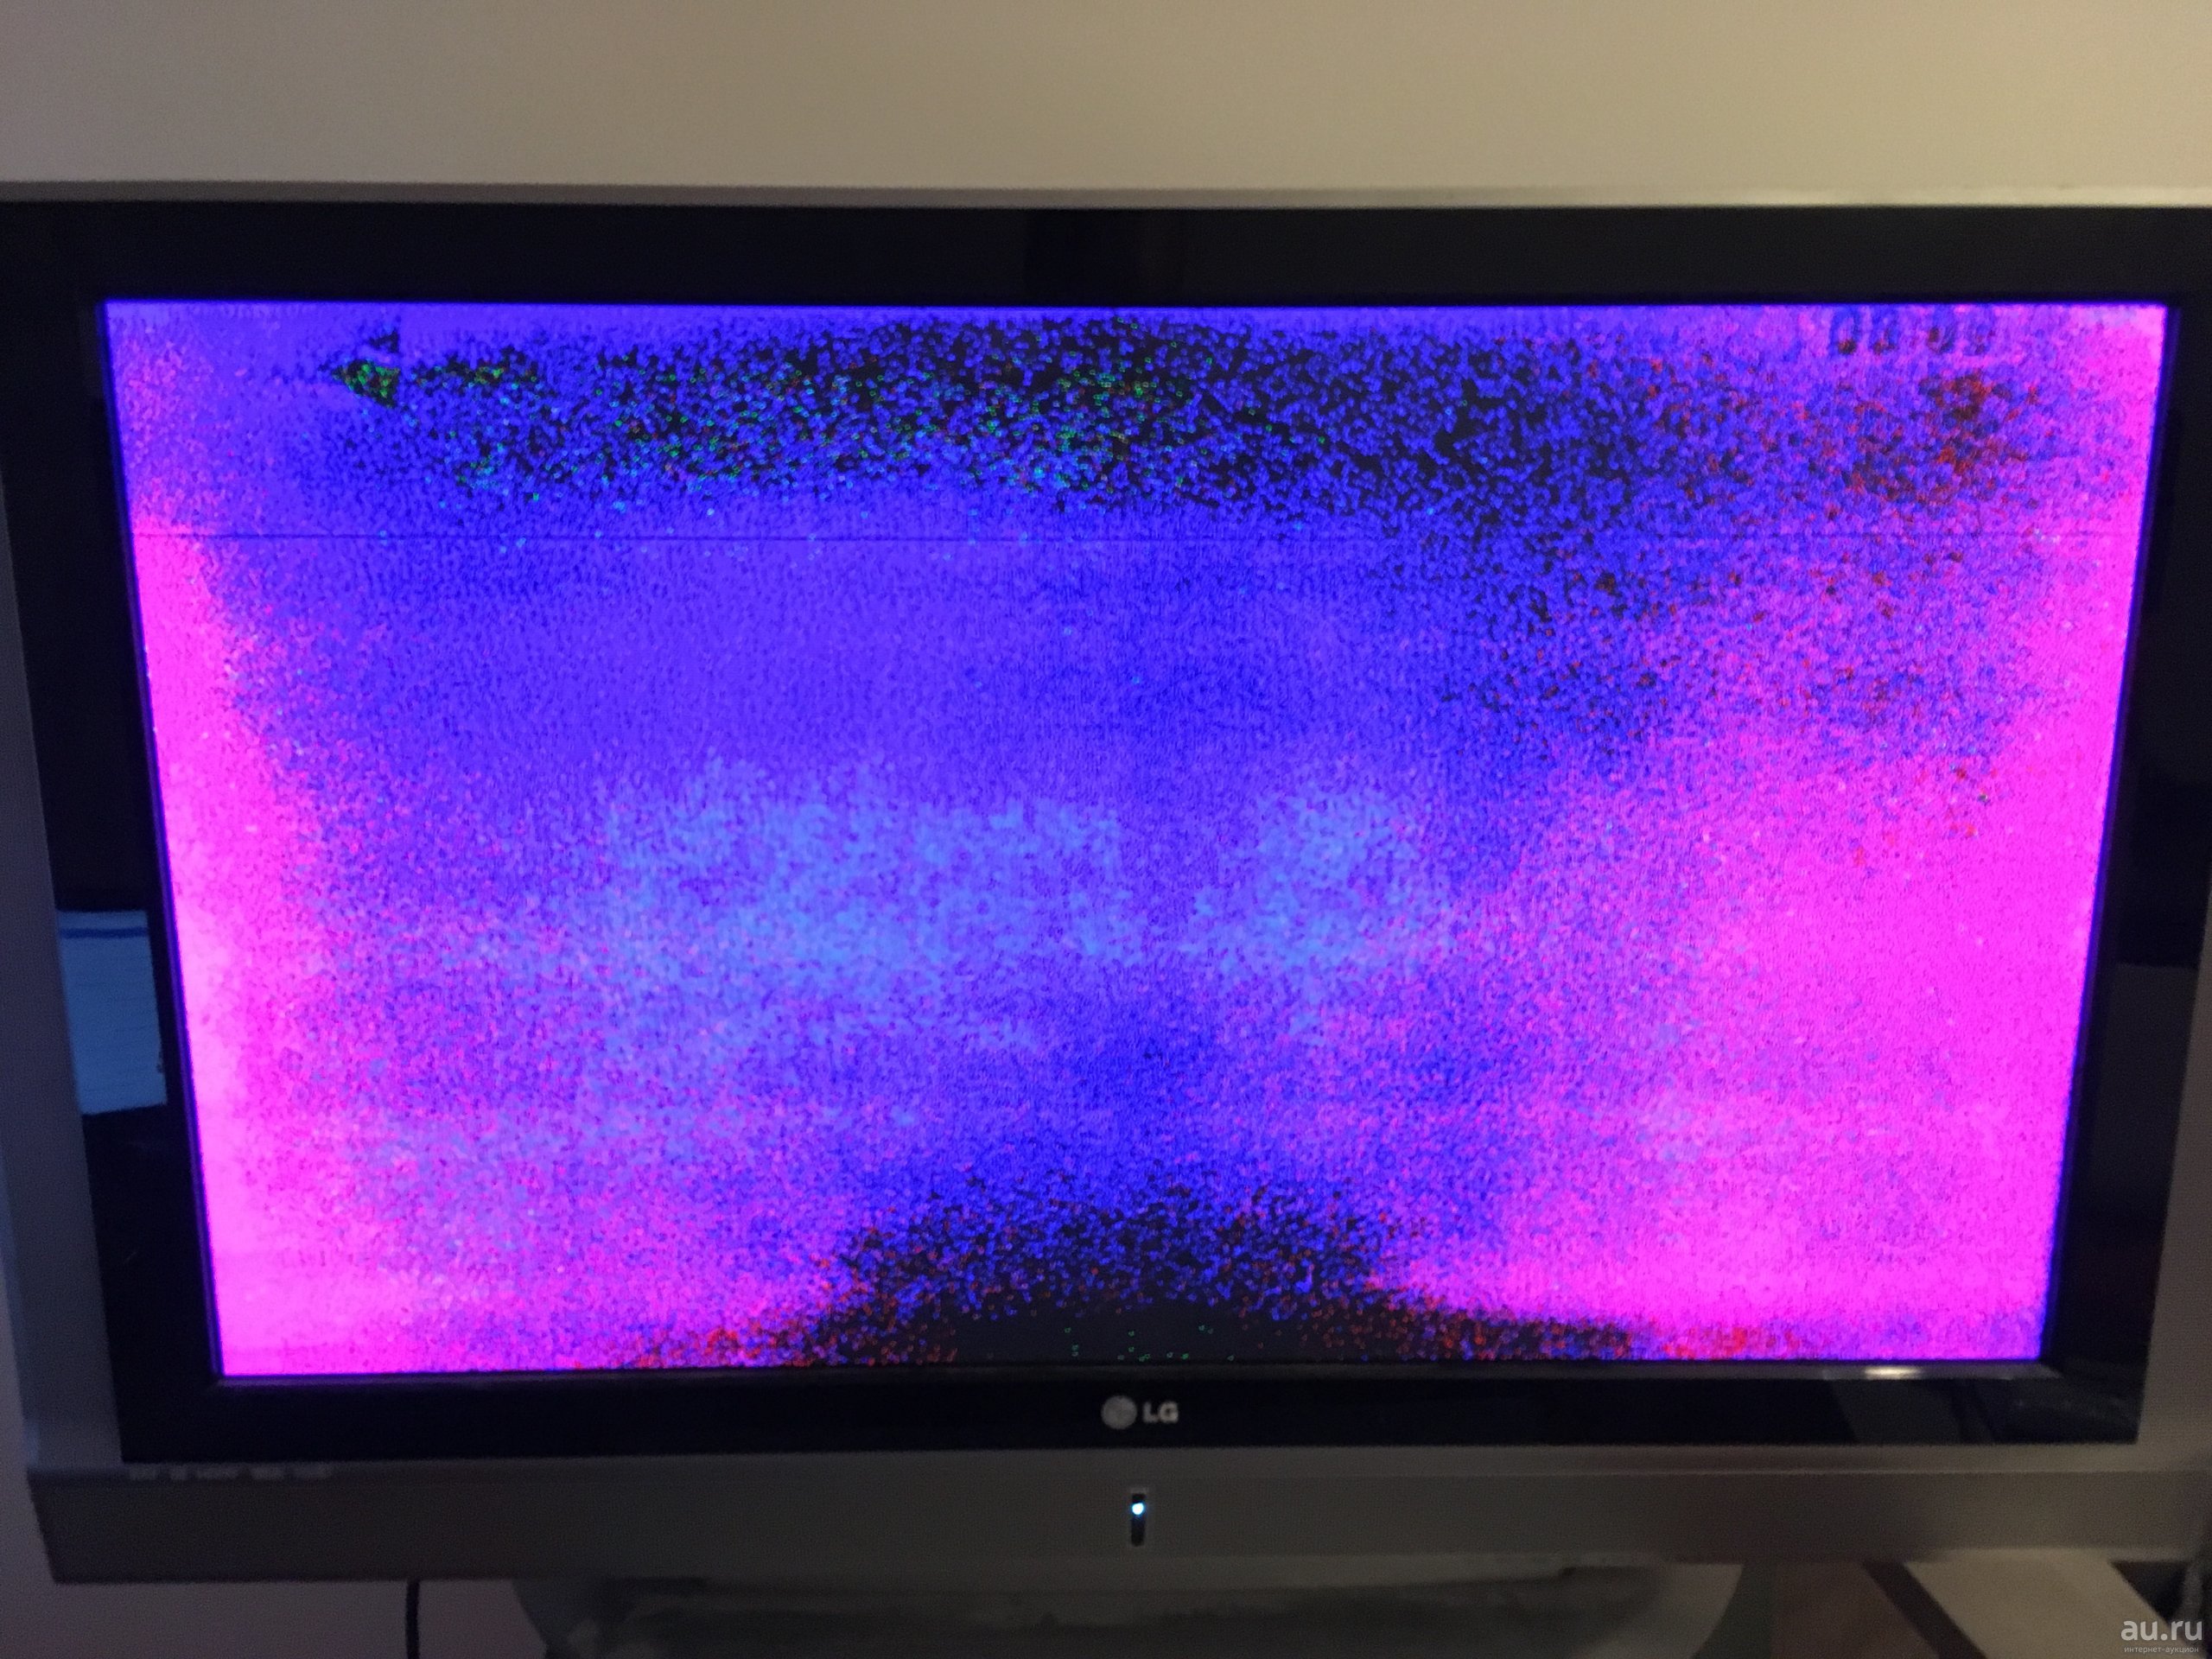 Цветные пятна на экране современного телевизора.